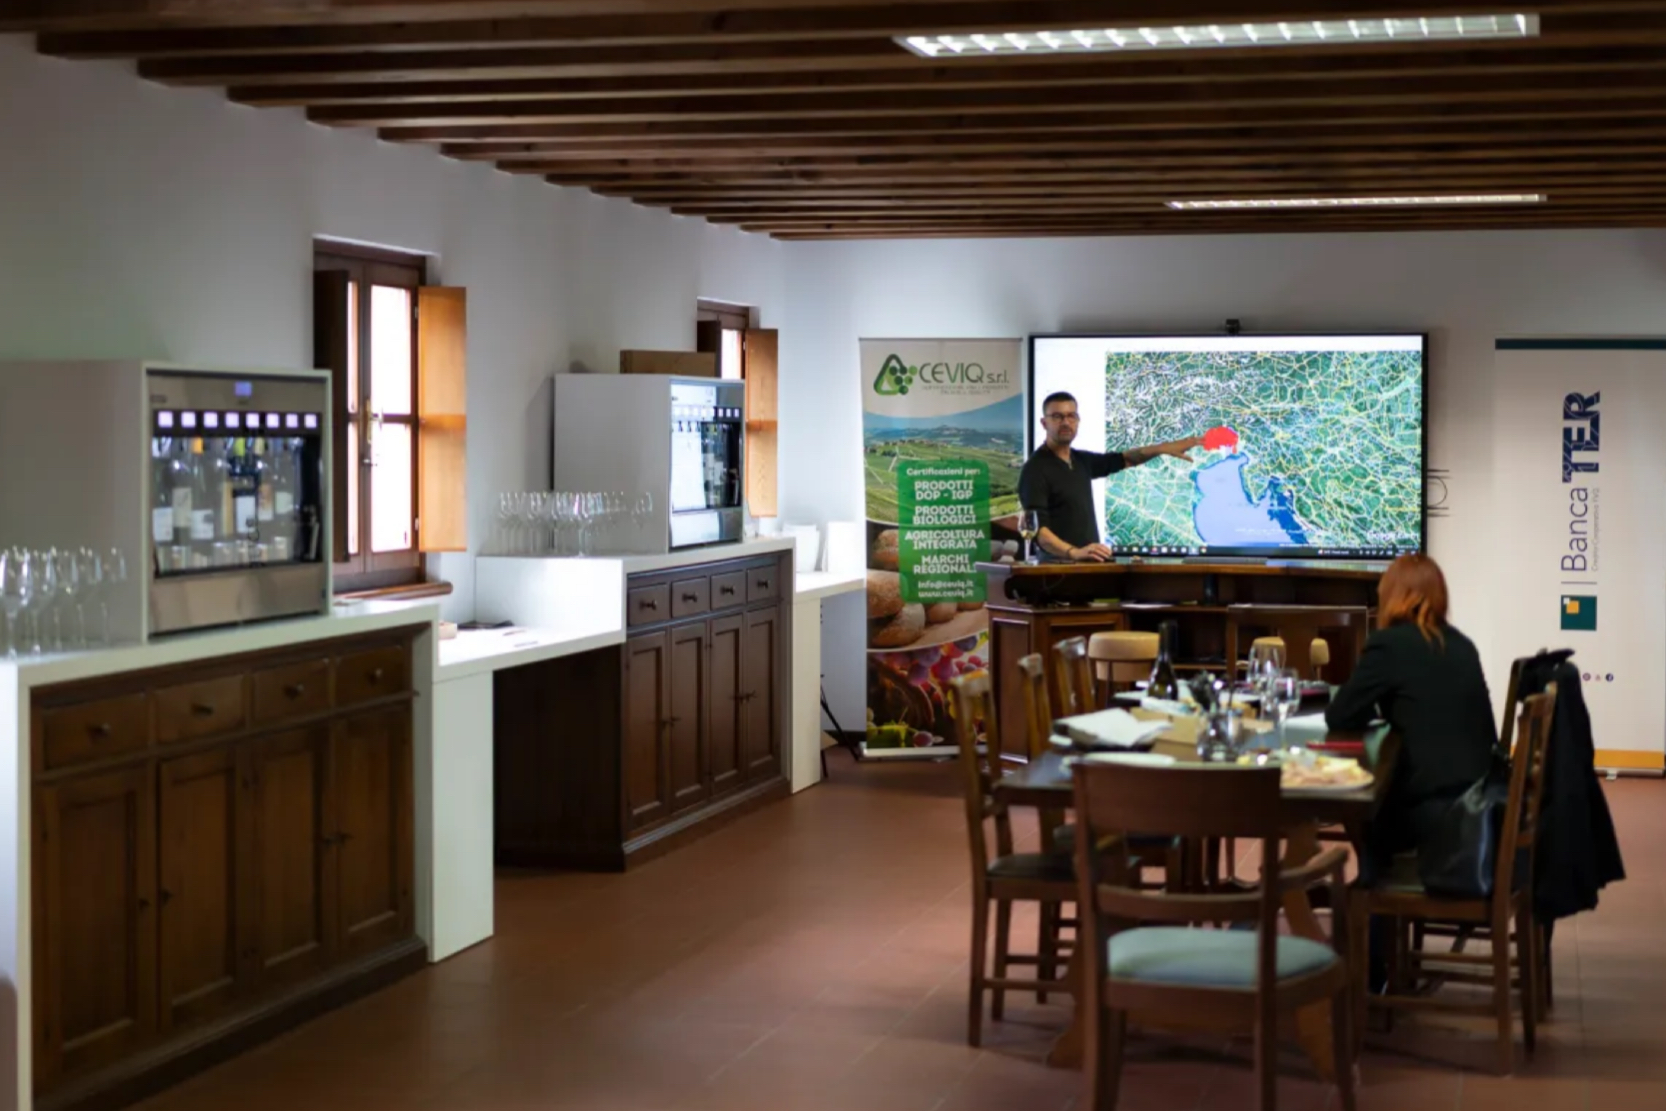 La Tasting Academy dei Colli Orientali del Friuli, un’opportunità importante per il territorio